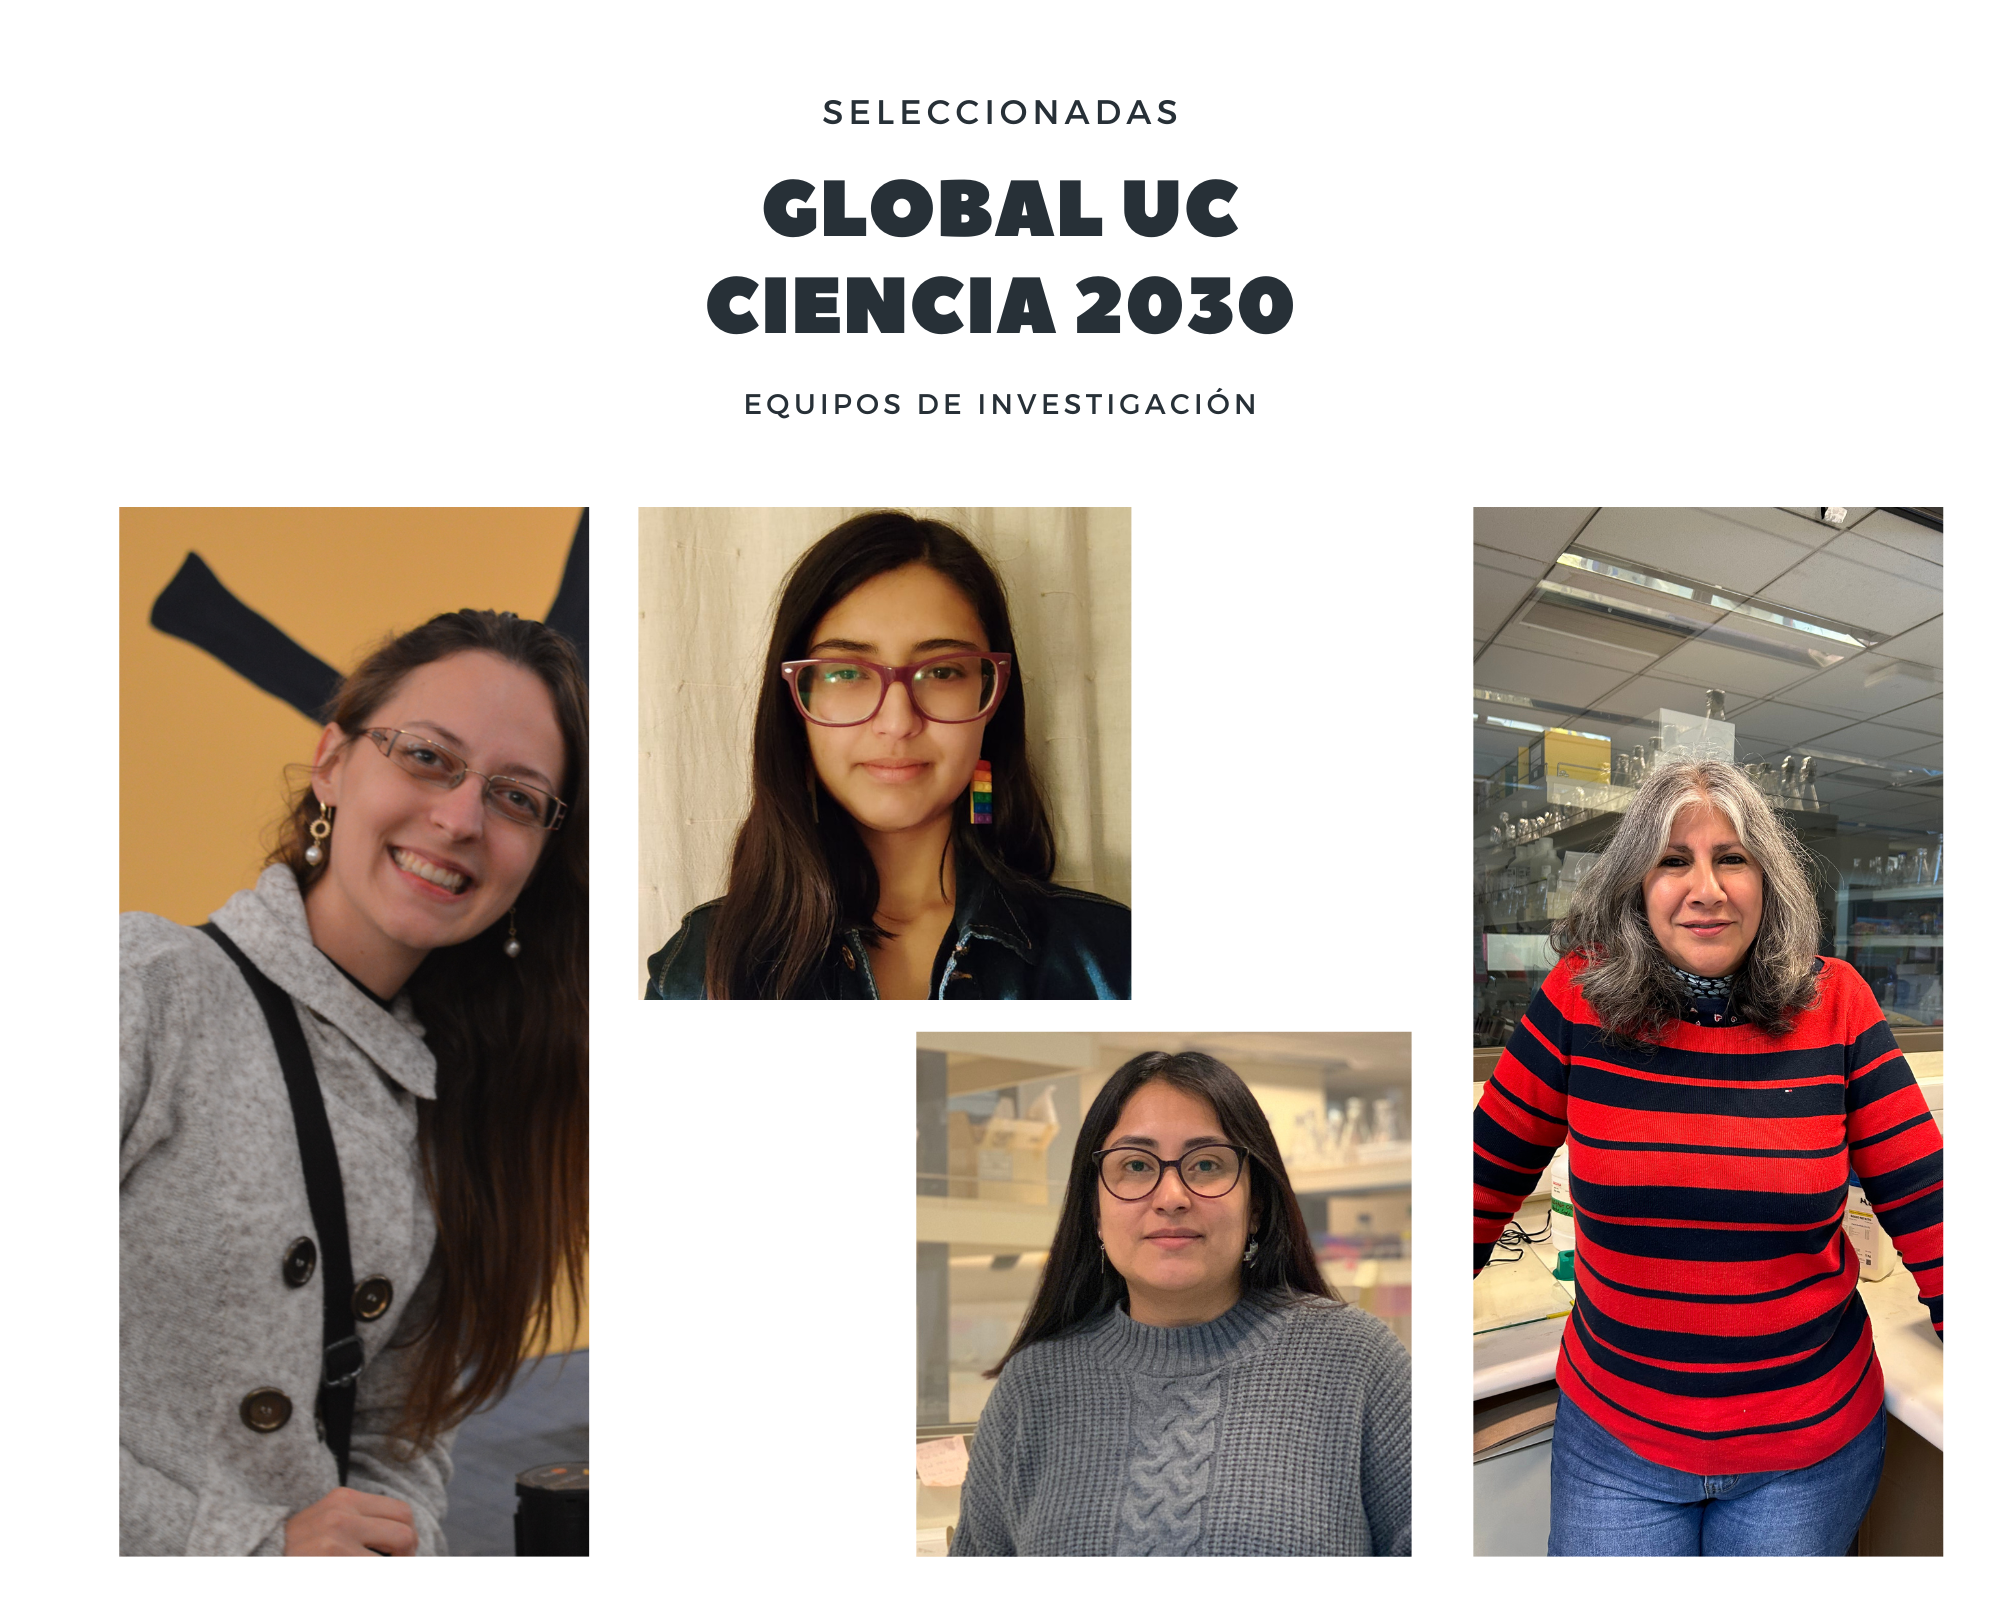 Dos equipos de investigación seleccionados para el Programa Global UC-Ciencia 2030